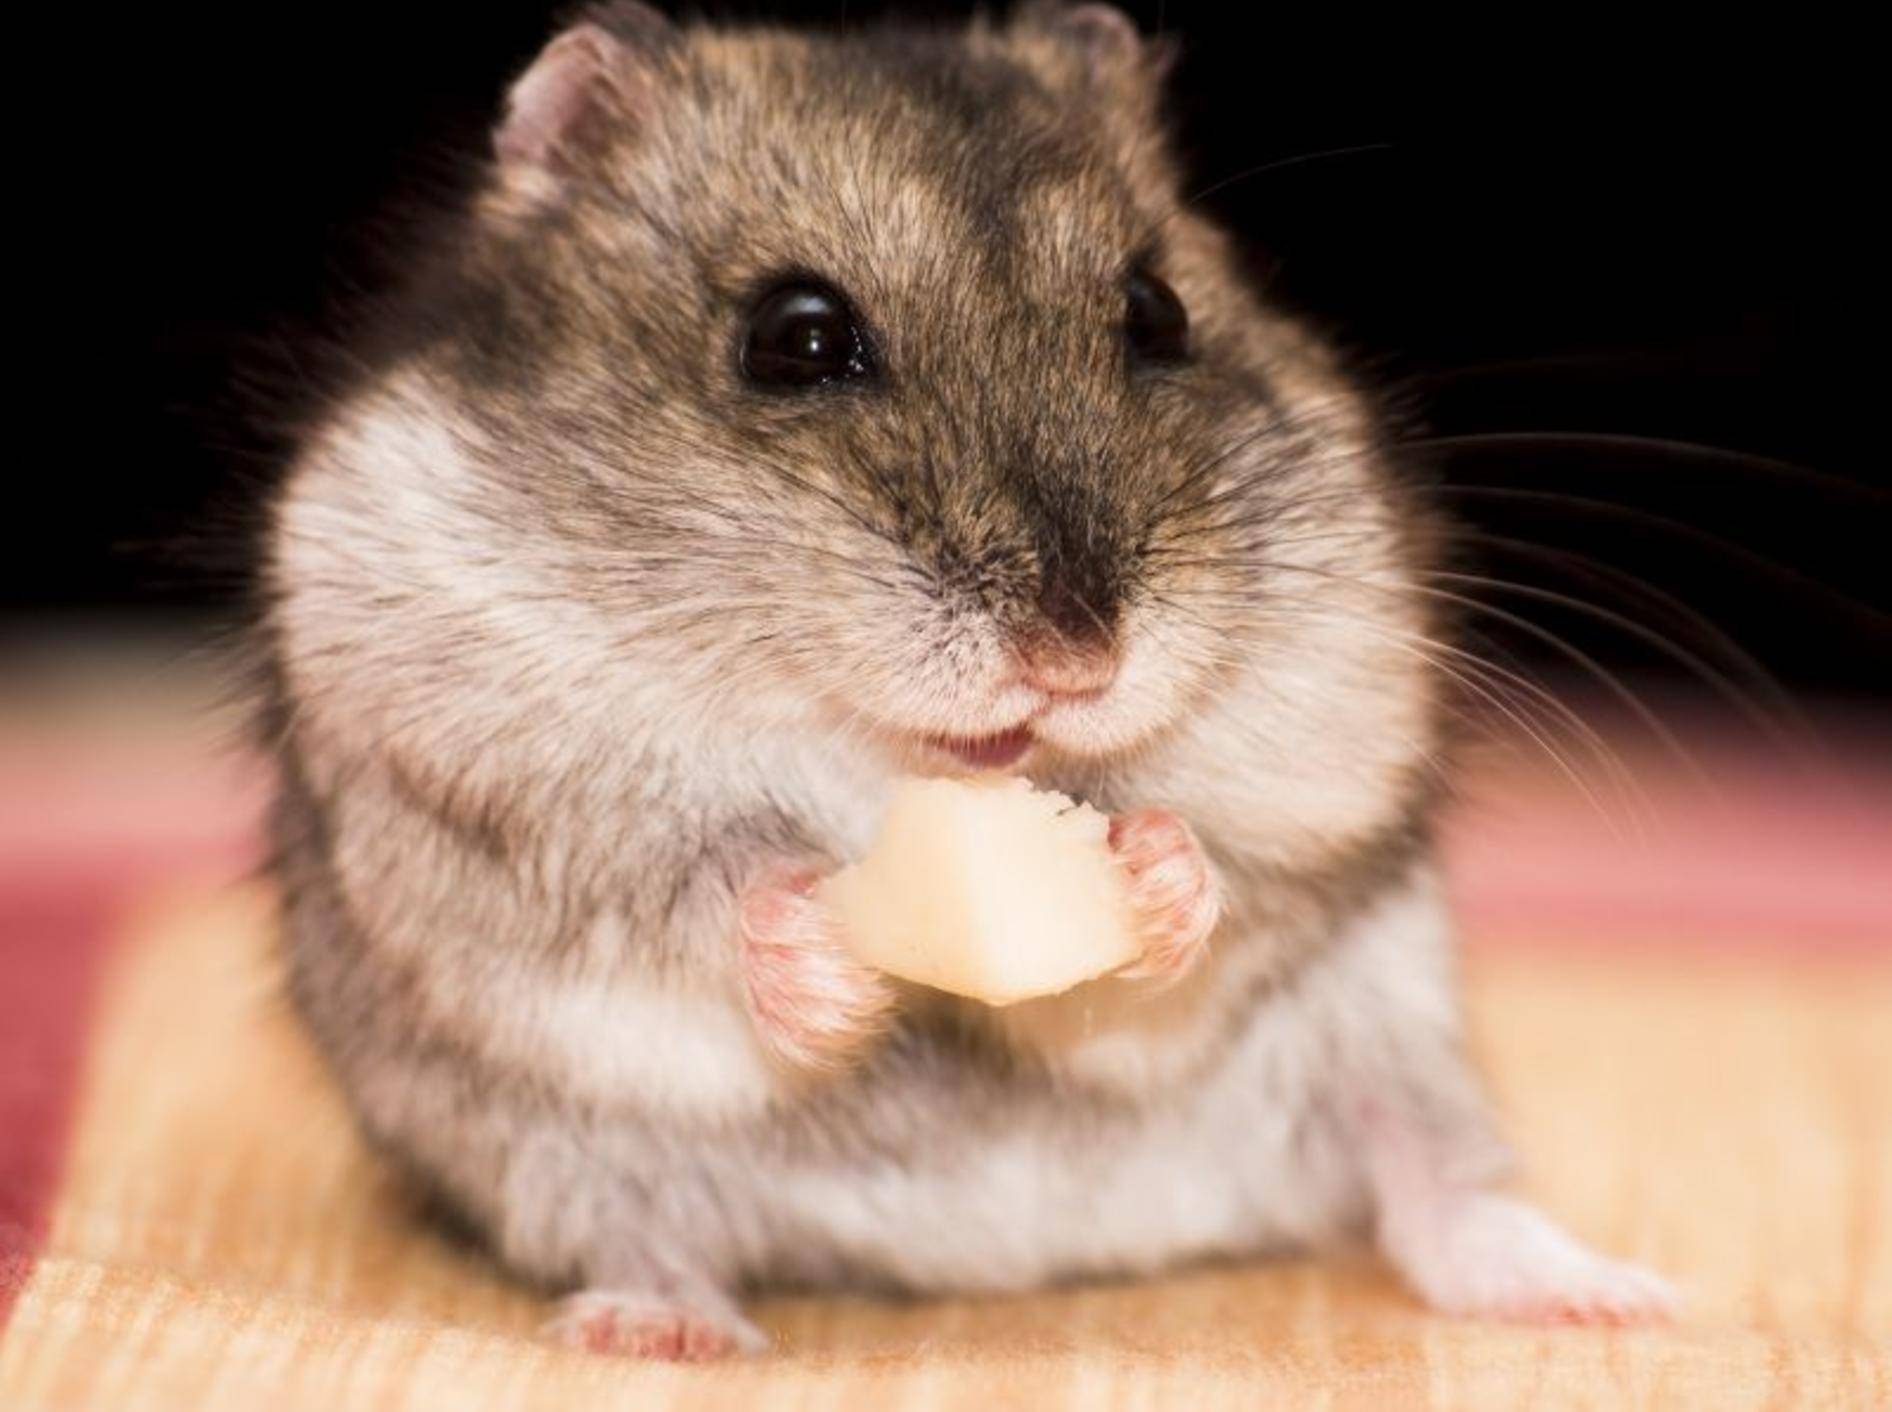 Futter, Snacks und Vitamine für den Hamster – Bild: Shutterstock / MilousSK